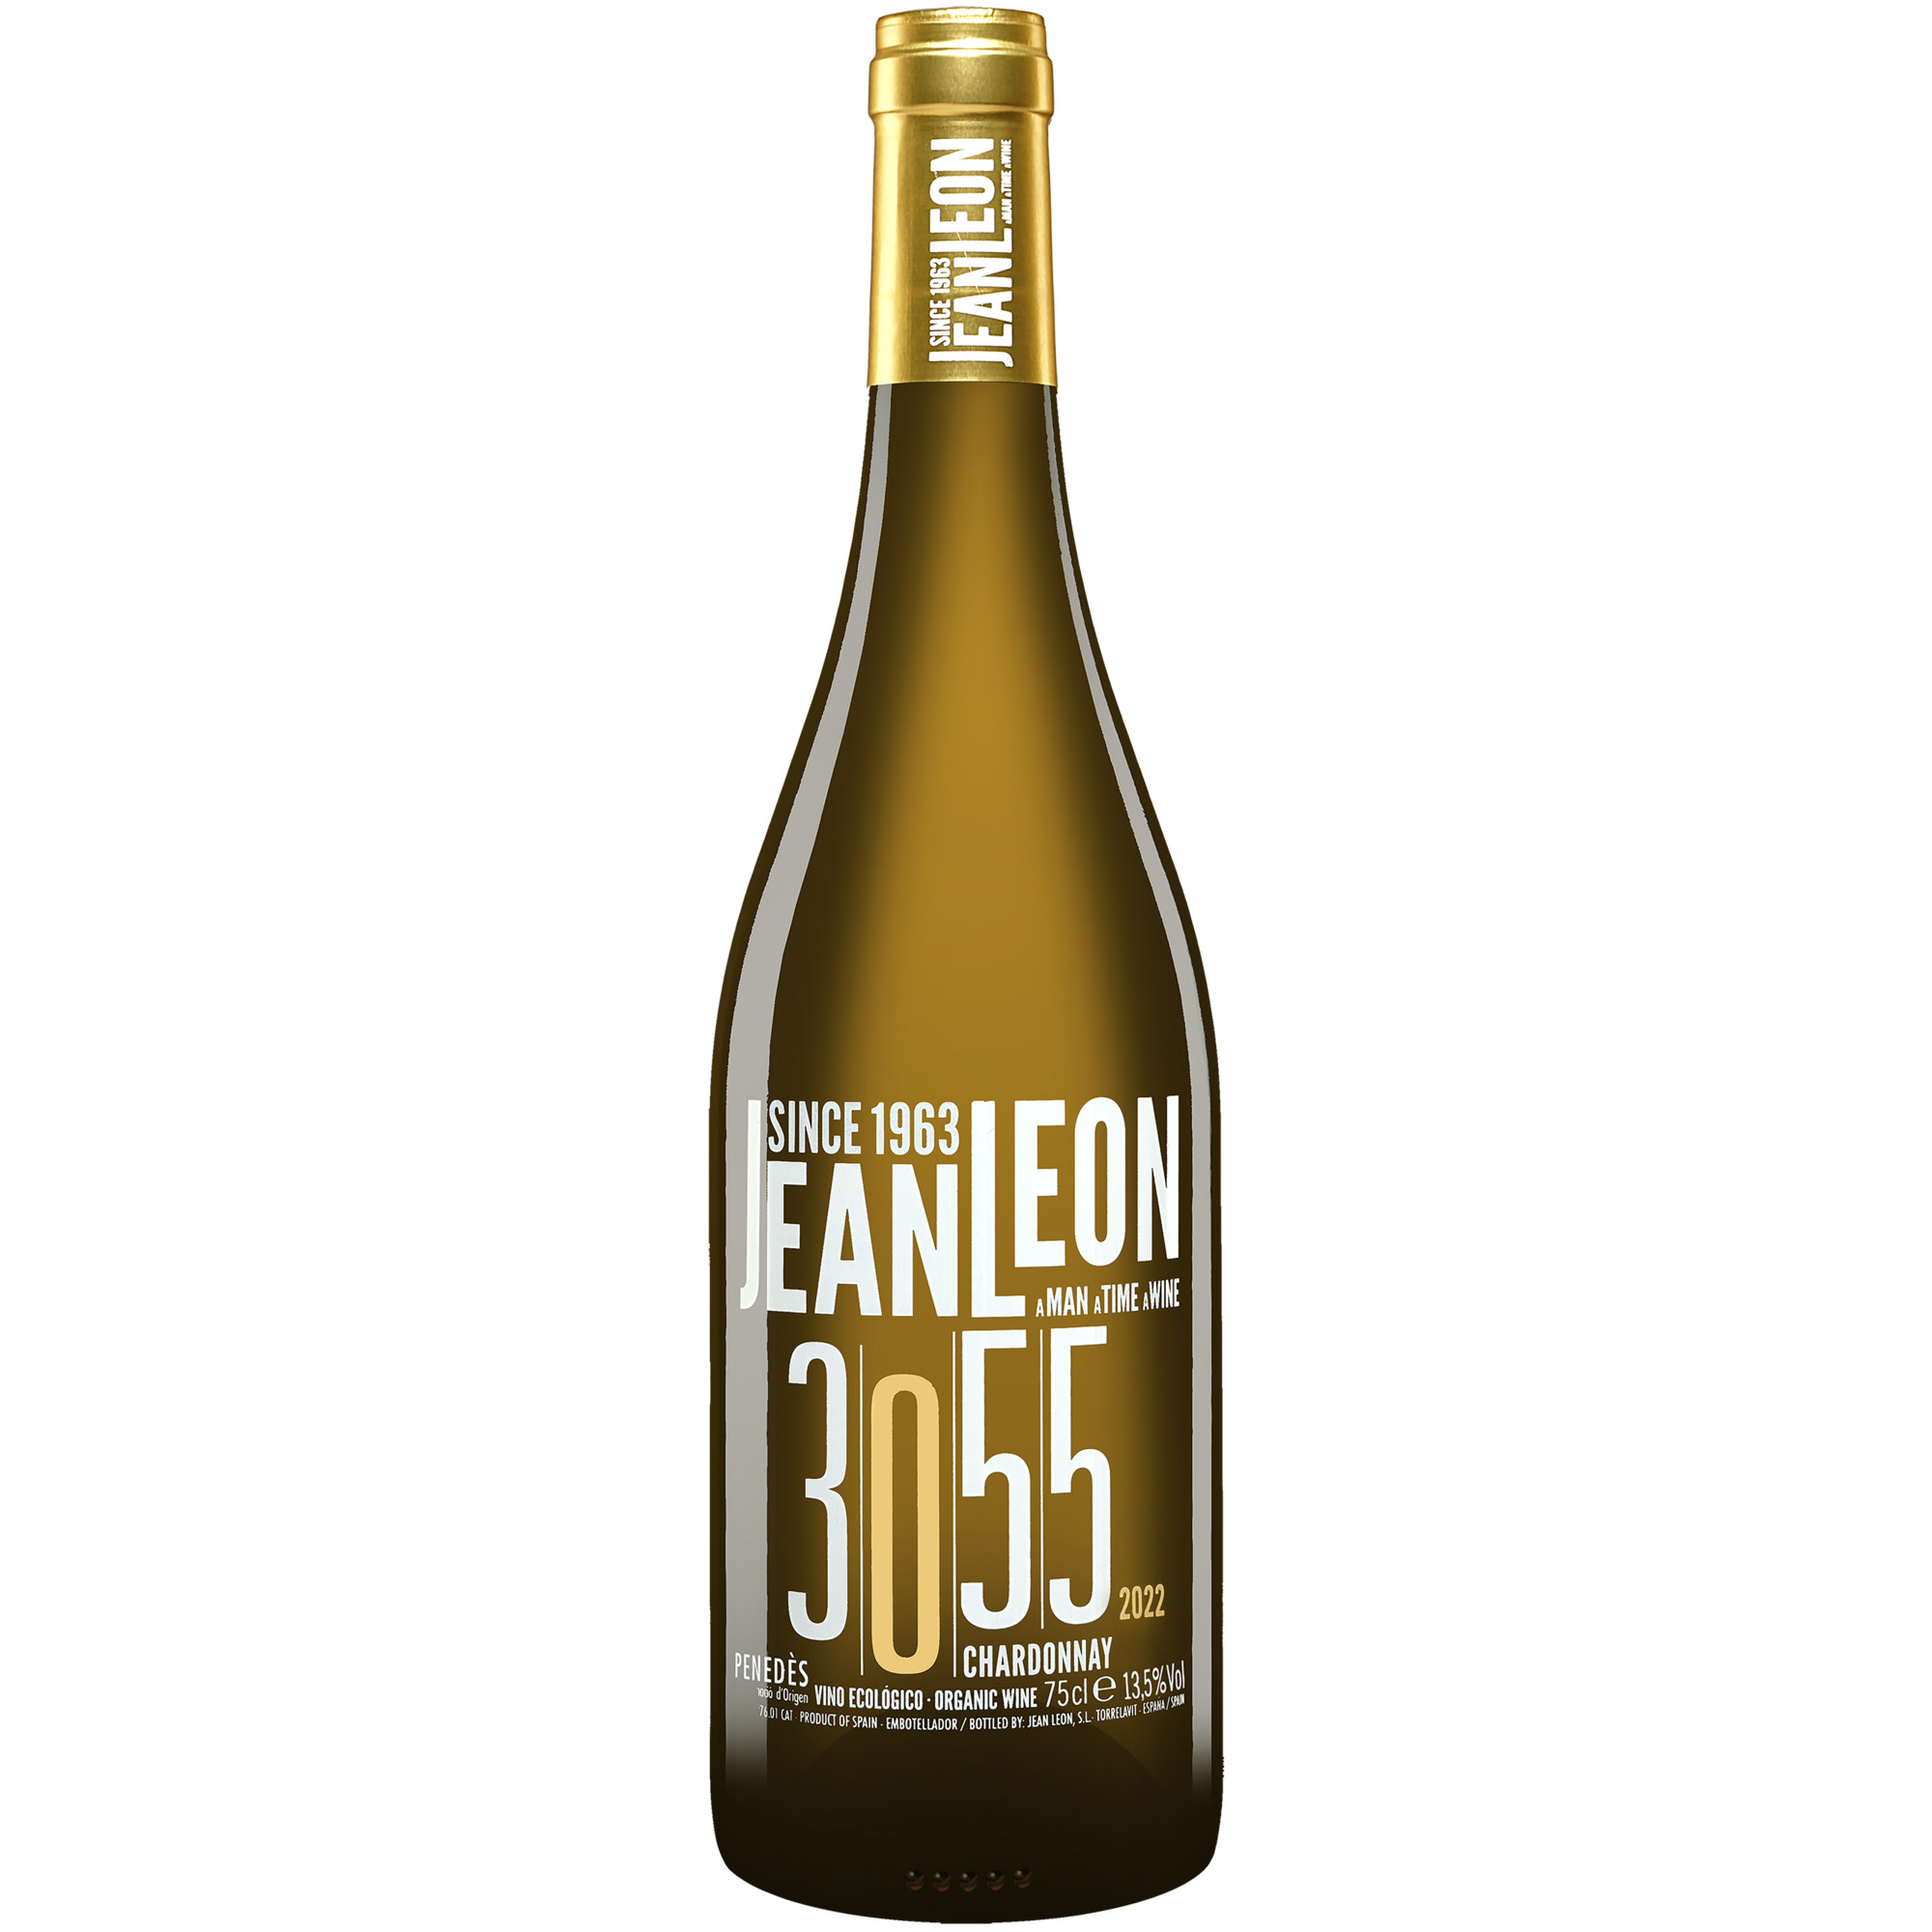 Jean León »3055« Chardonnay 2022  013.5% Vol. Weißwein Trocken aus Spanien